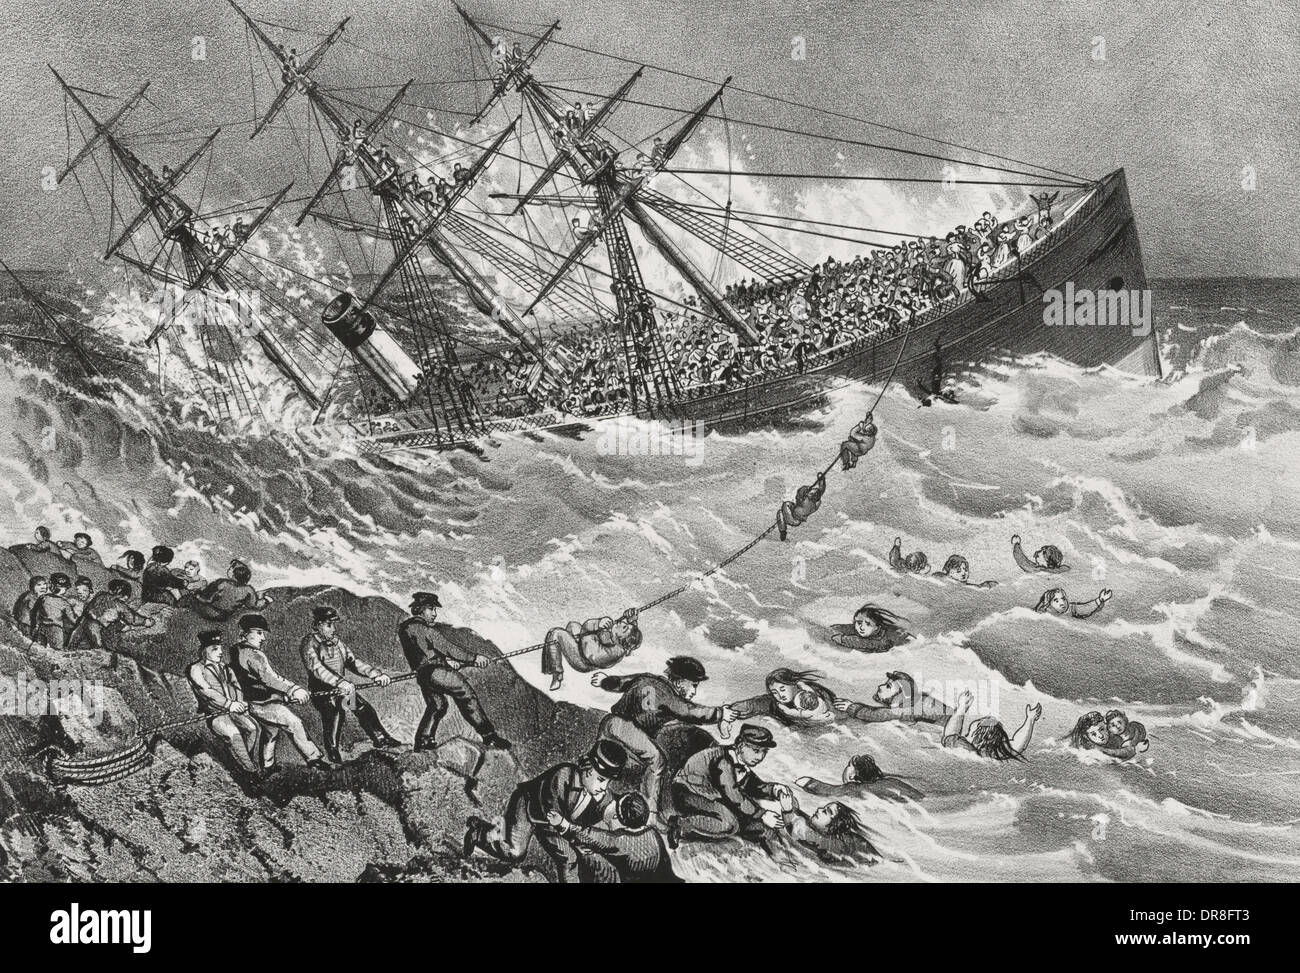 Il relitto dell'Atlantico - Da Liverpool a New York è affondata al largo della costa della Nuova Scozia - 1 Aprile 1873 - 562 vite sono state perse Foto Stock